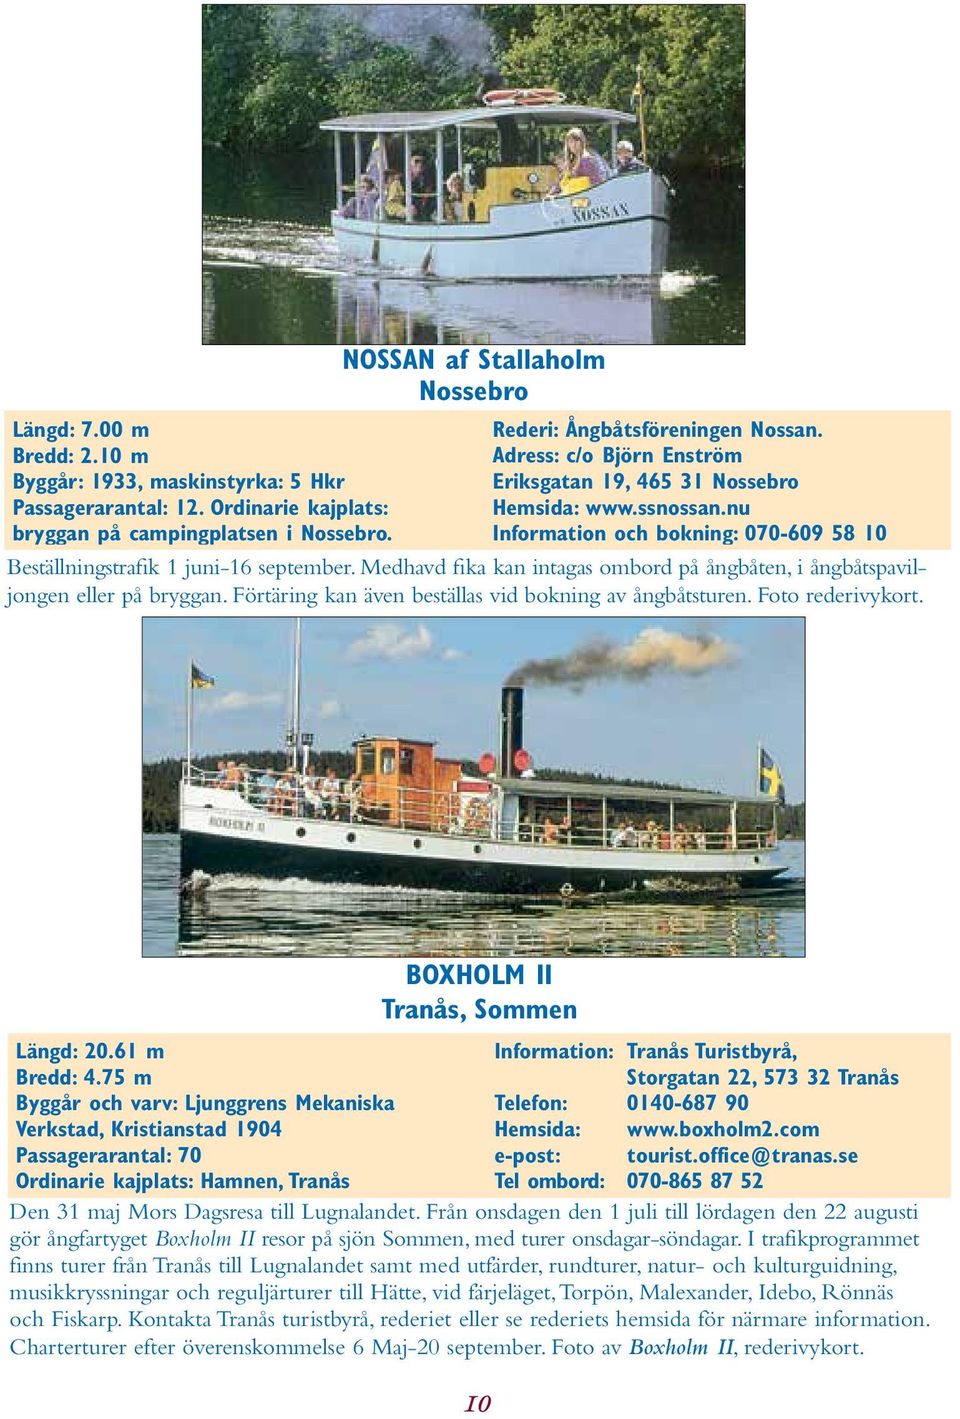 nu Information och bokning: 070-609 58 10 Beställningstrafik 1 juni-16 september. Medhavd fika kan intagas ombord på ångbåten, i ångbåtspaviljongen eller på bryggan.